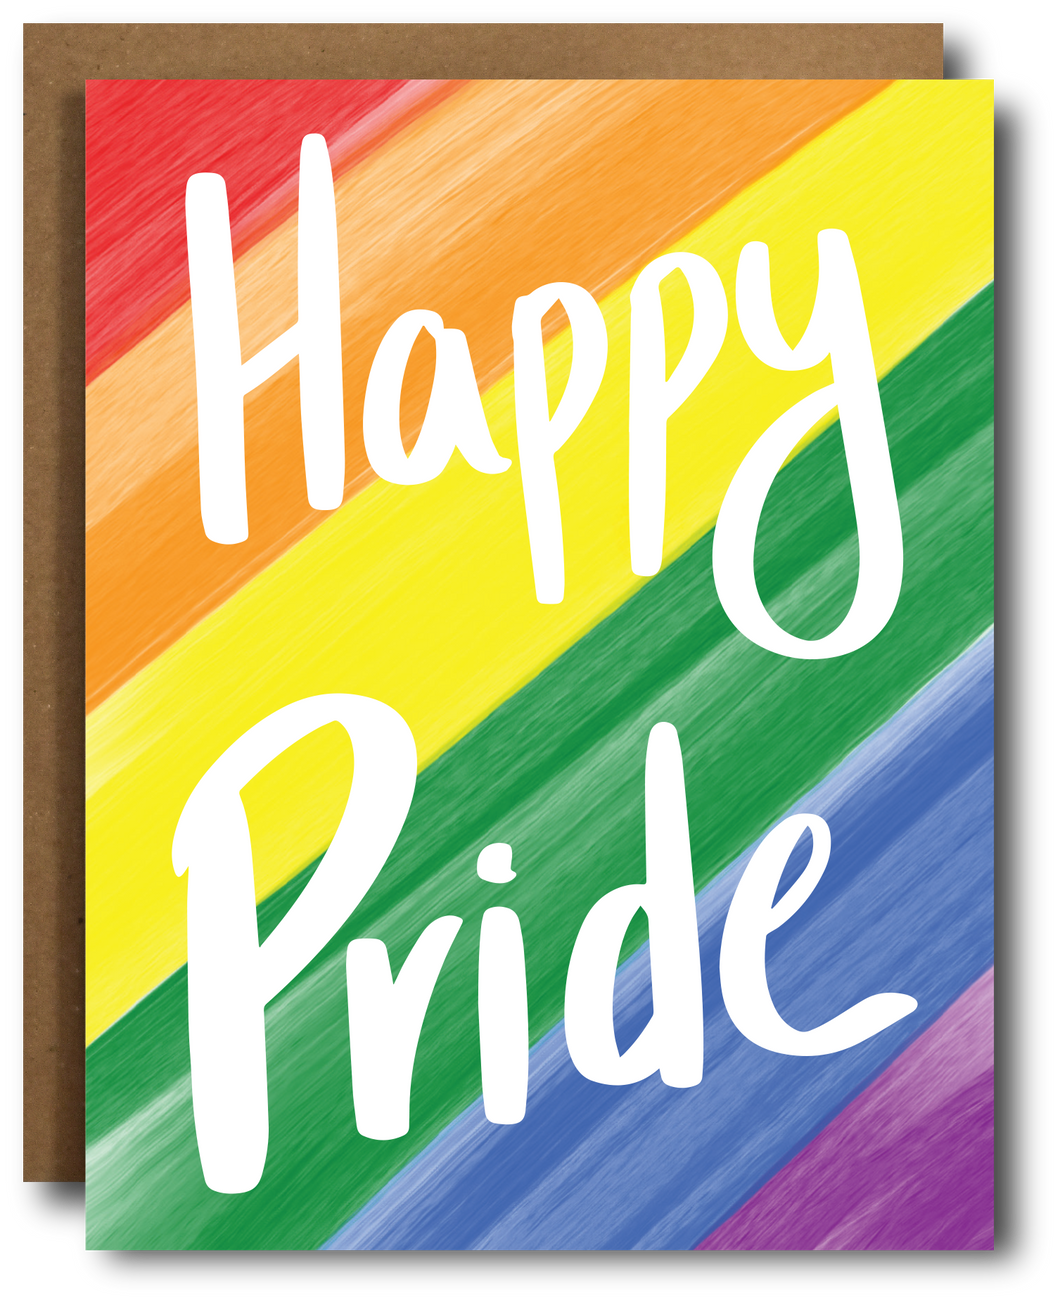 Happy Pride Card